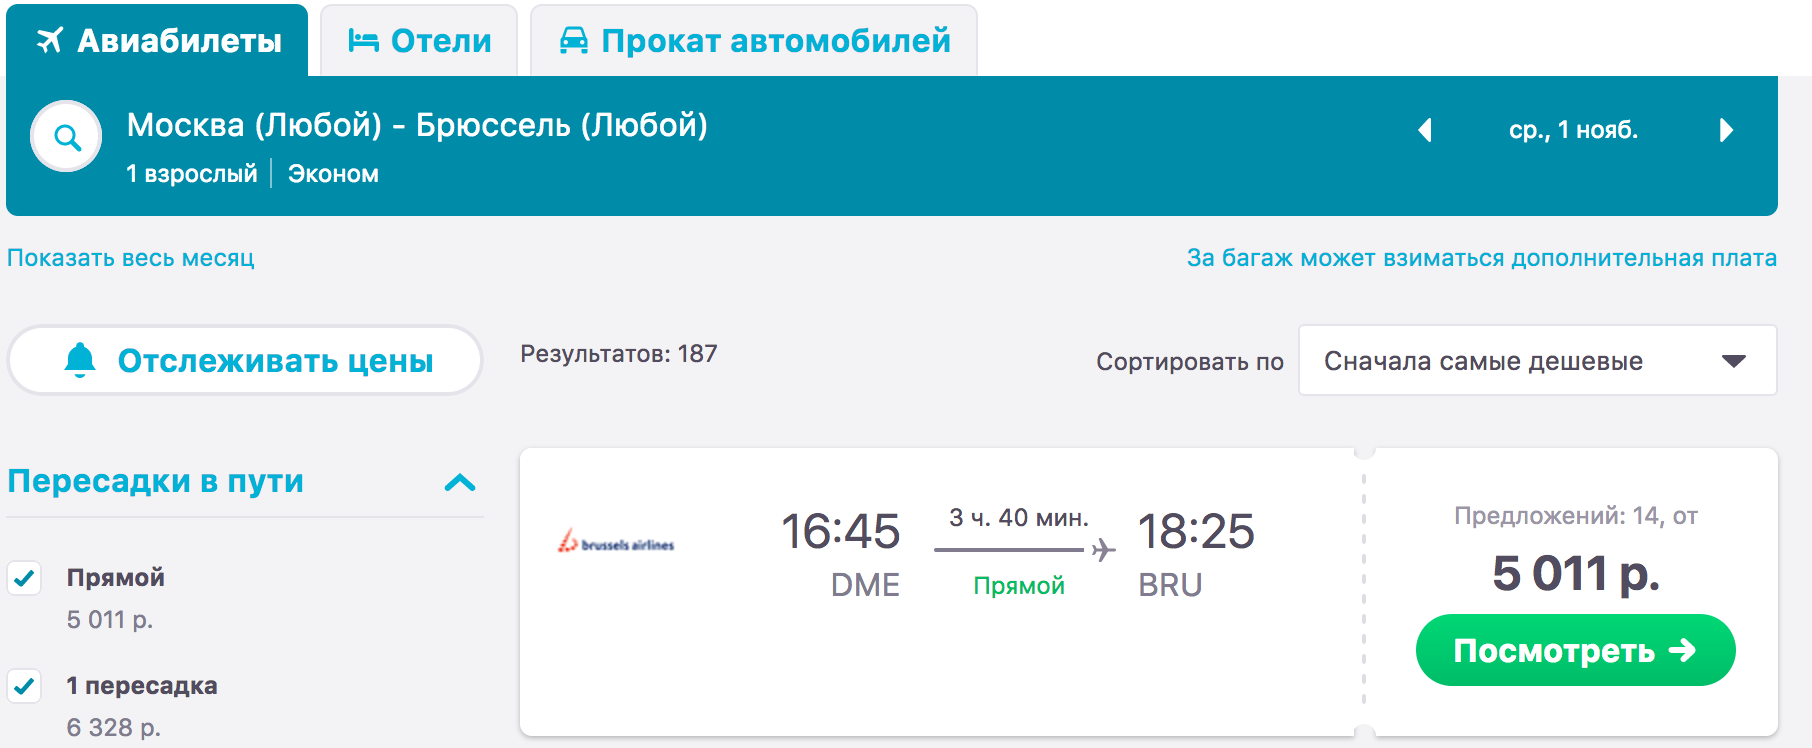 Билет астрахань санкт петербург самолет прямой трансаэро авиабилеты москва хабаровск